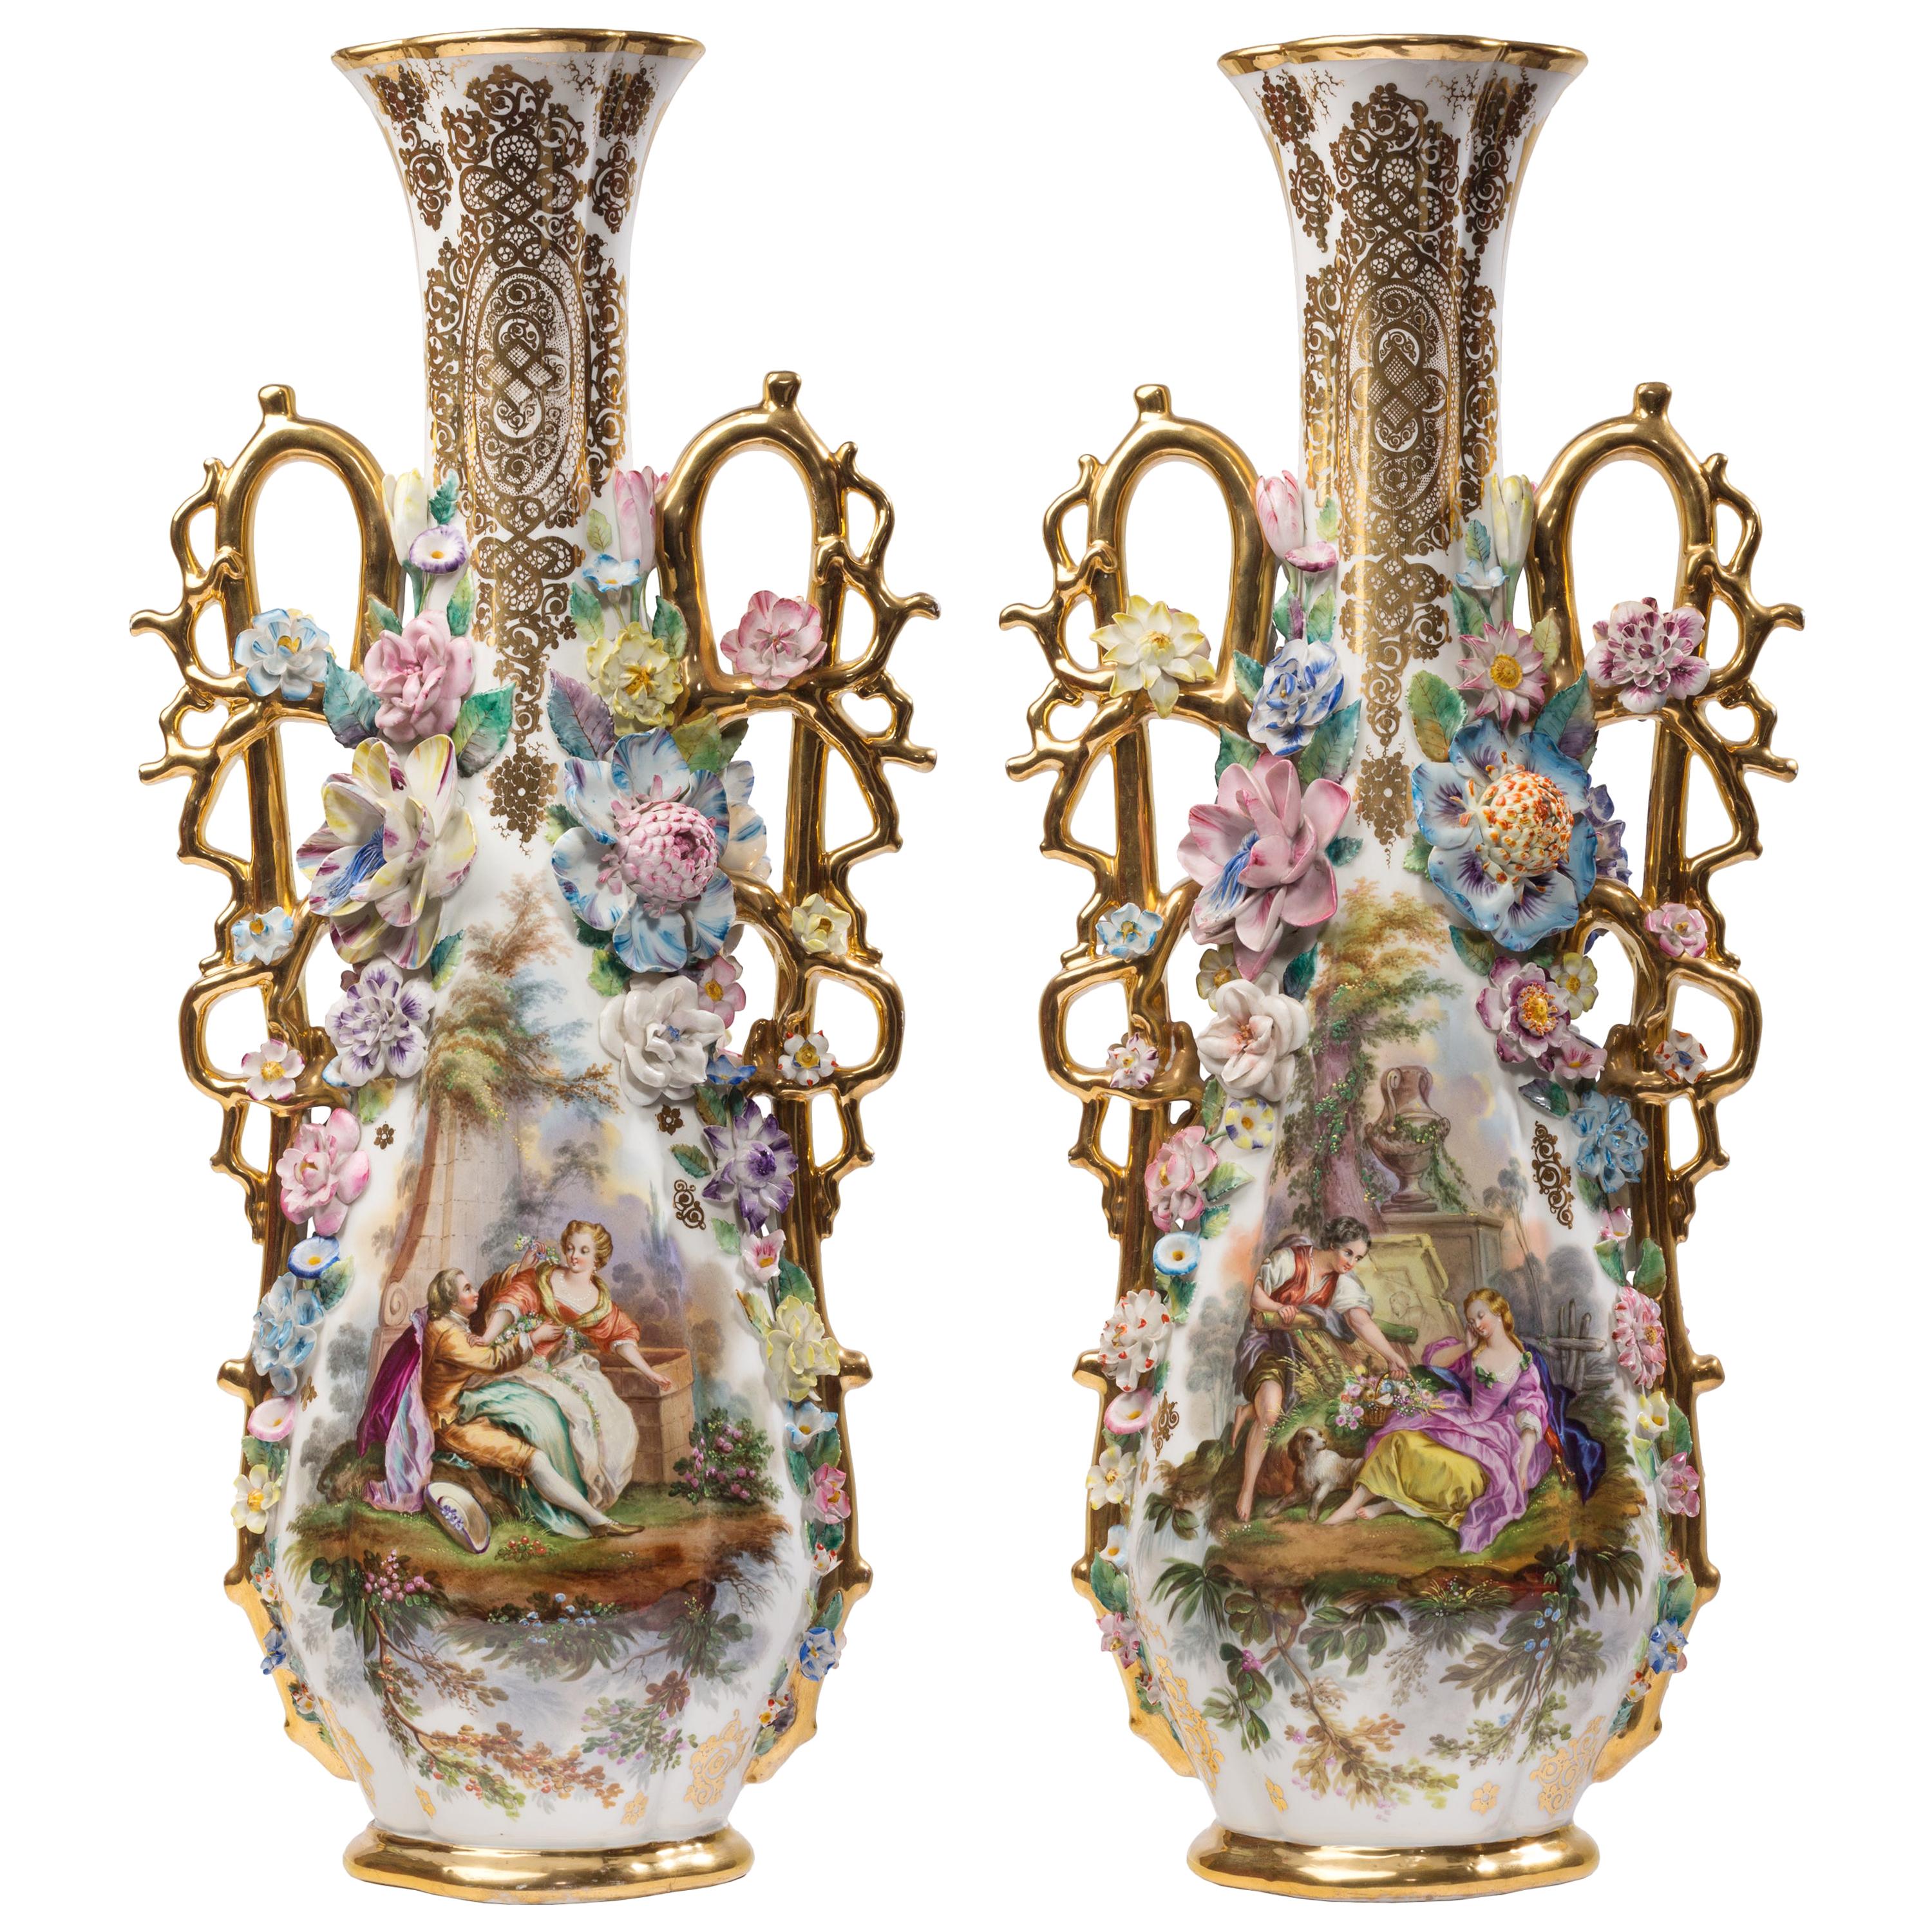 Paire de vases en porcelaine française de style rococo hautement décorés, att. Jacob Petit